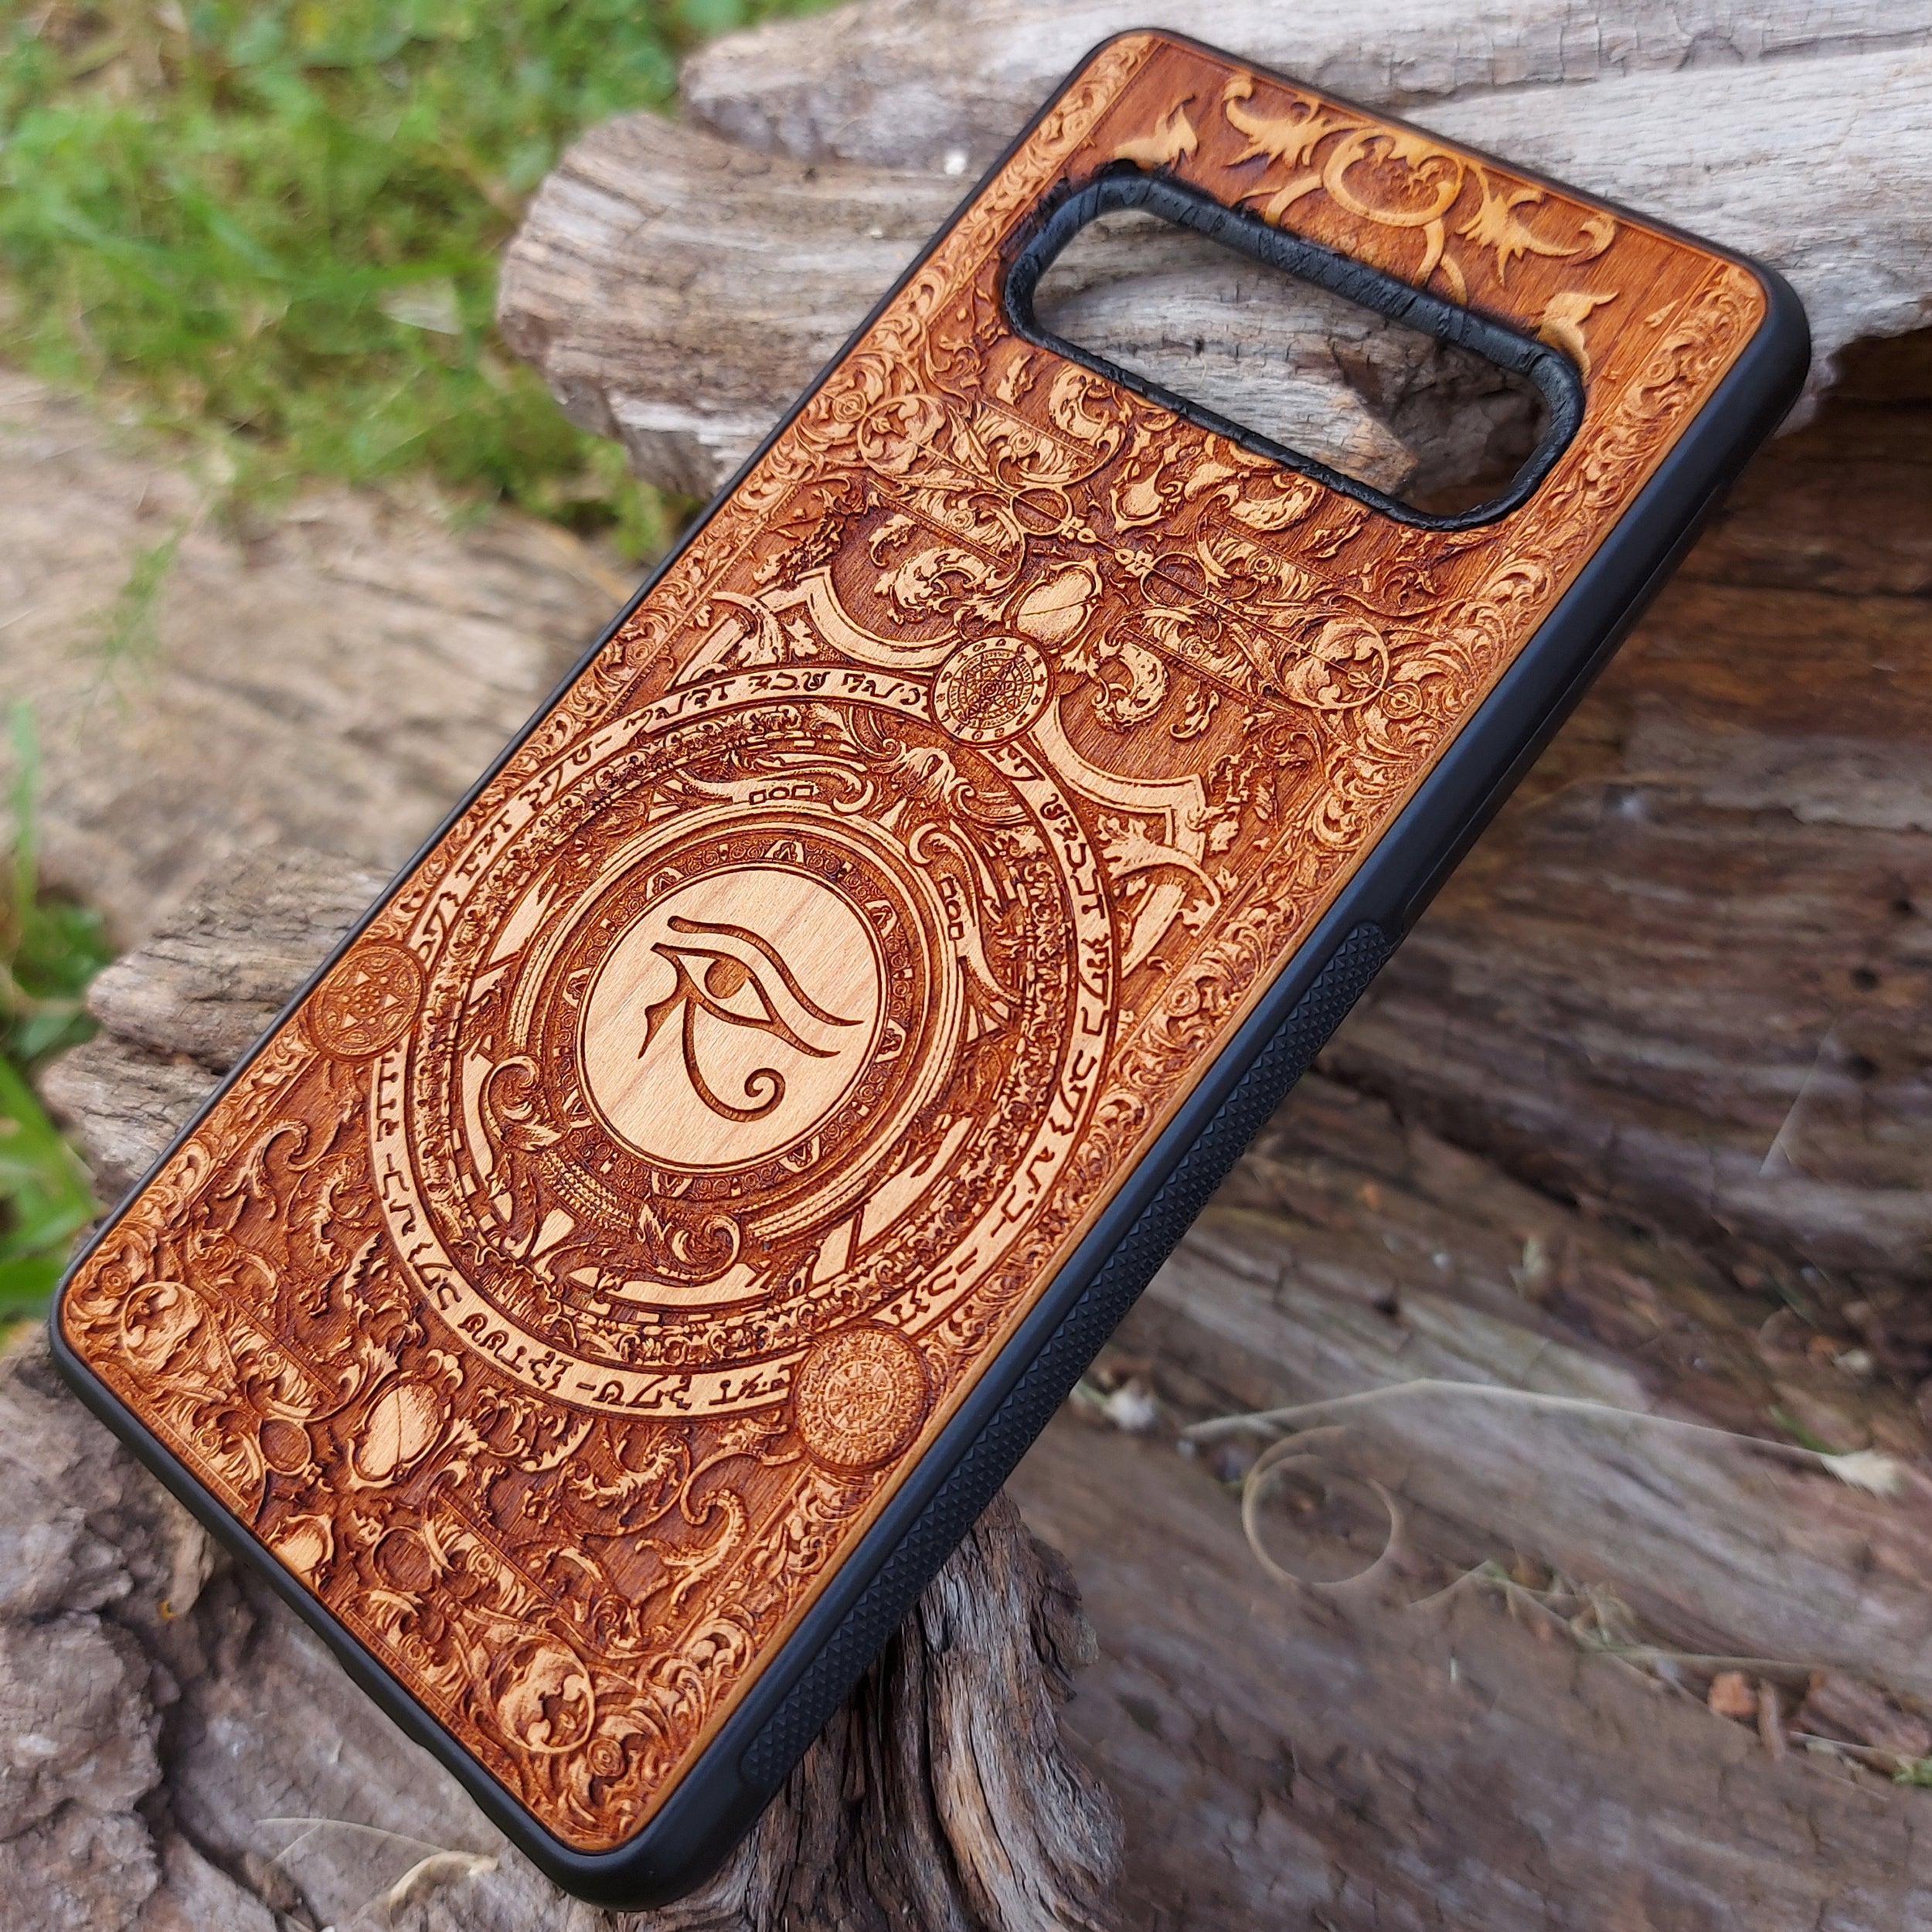 wood s10 plus phone case